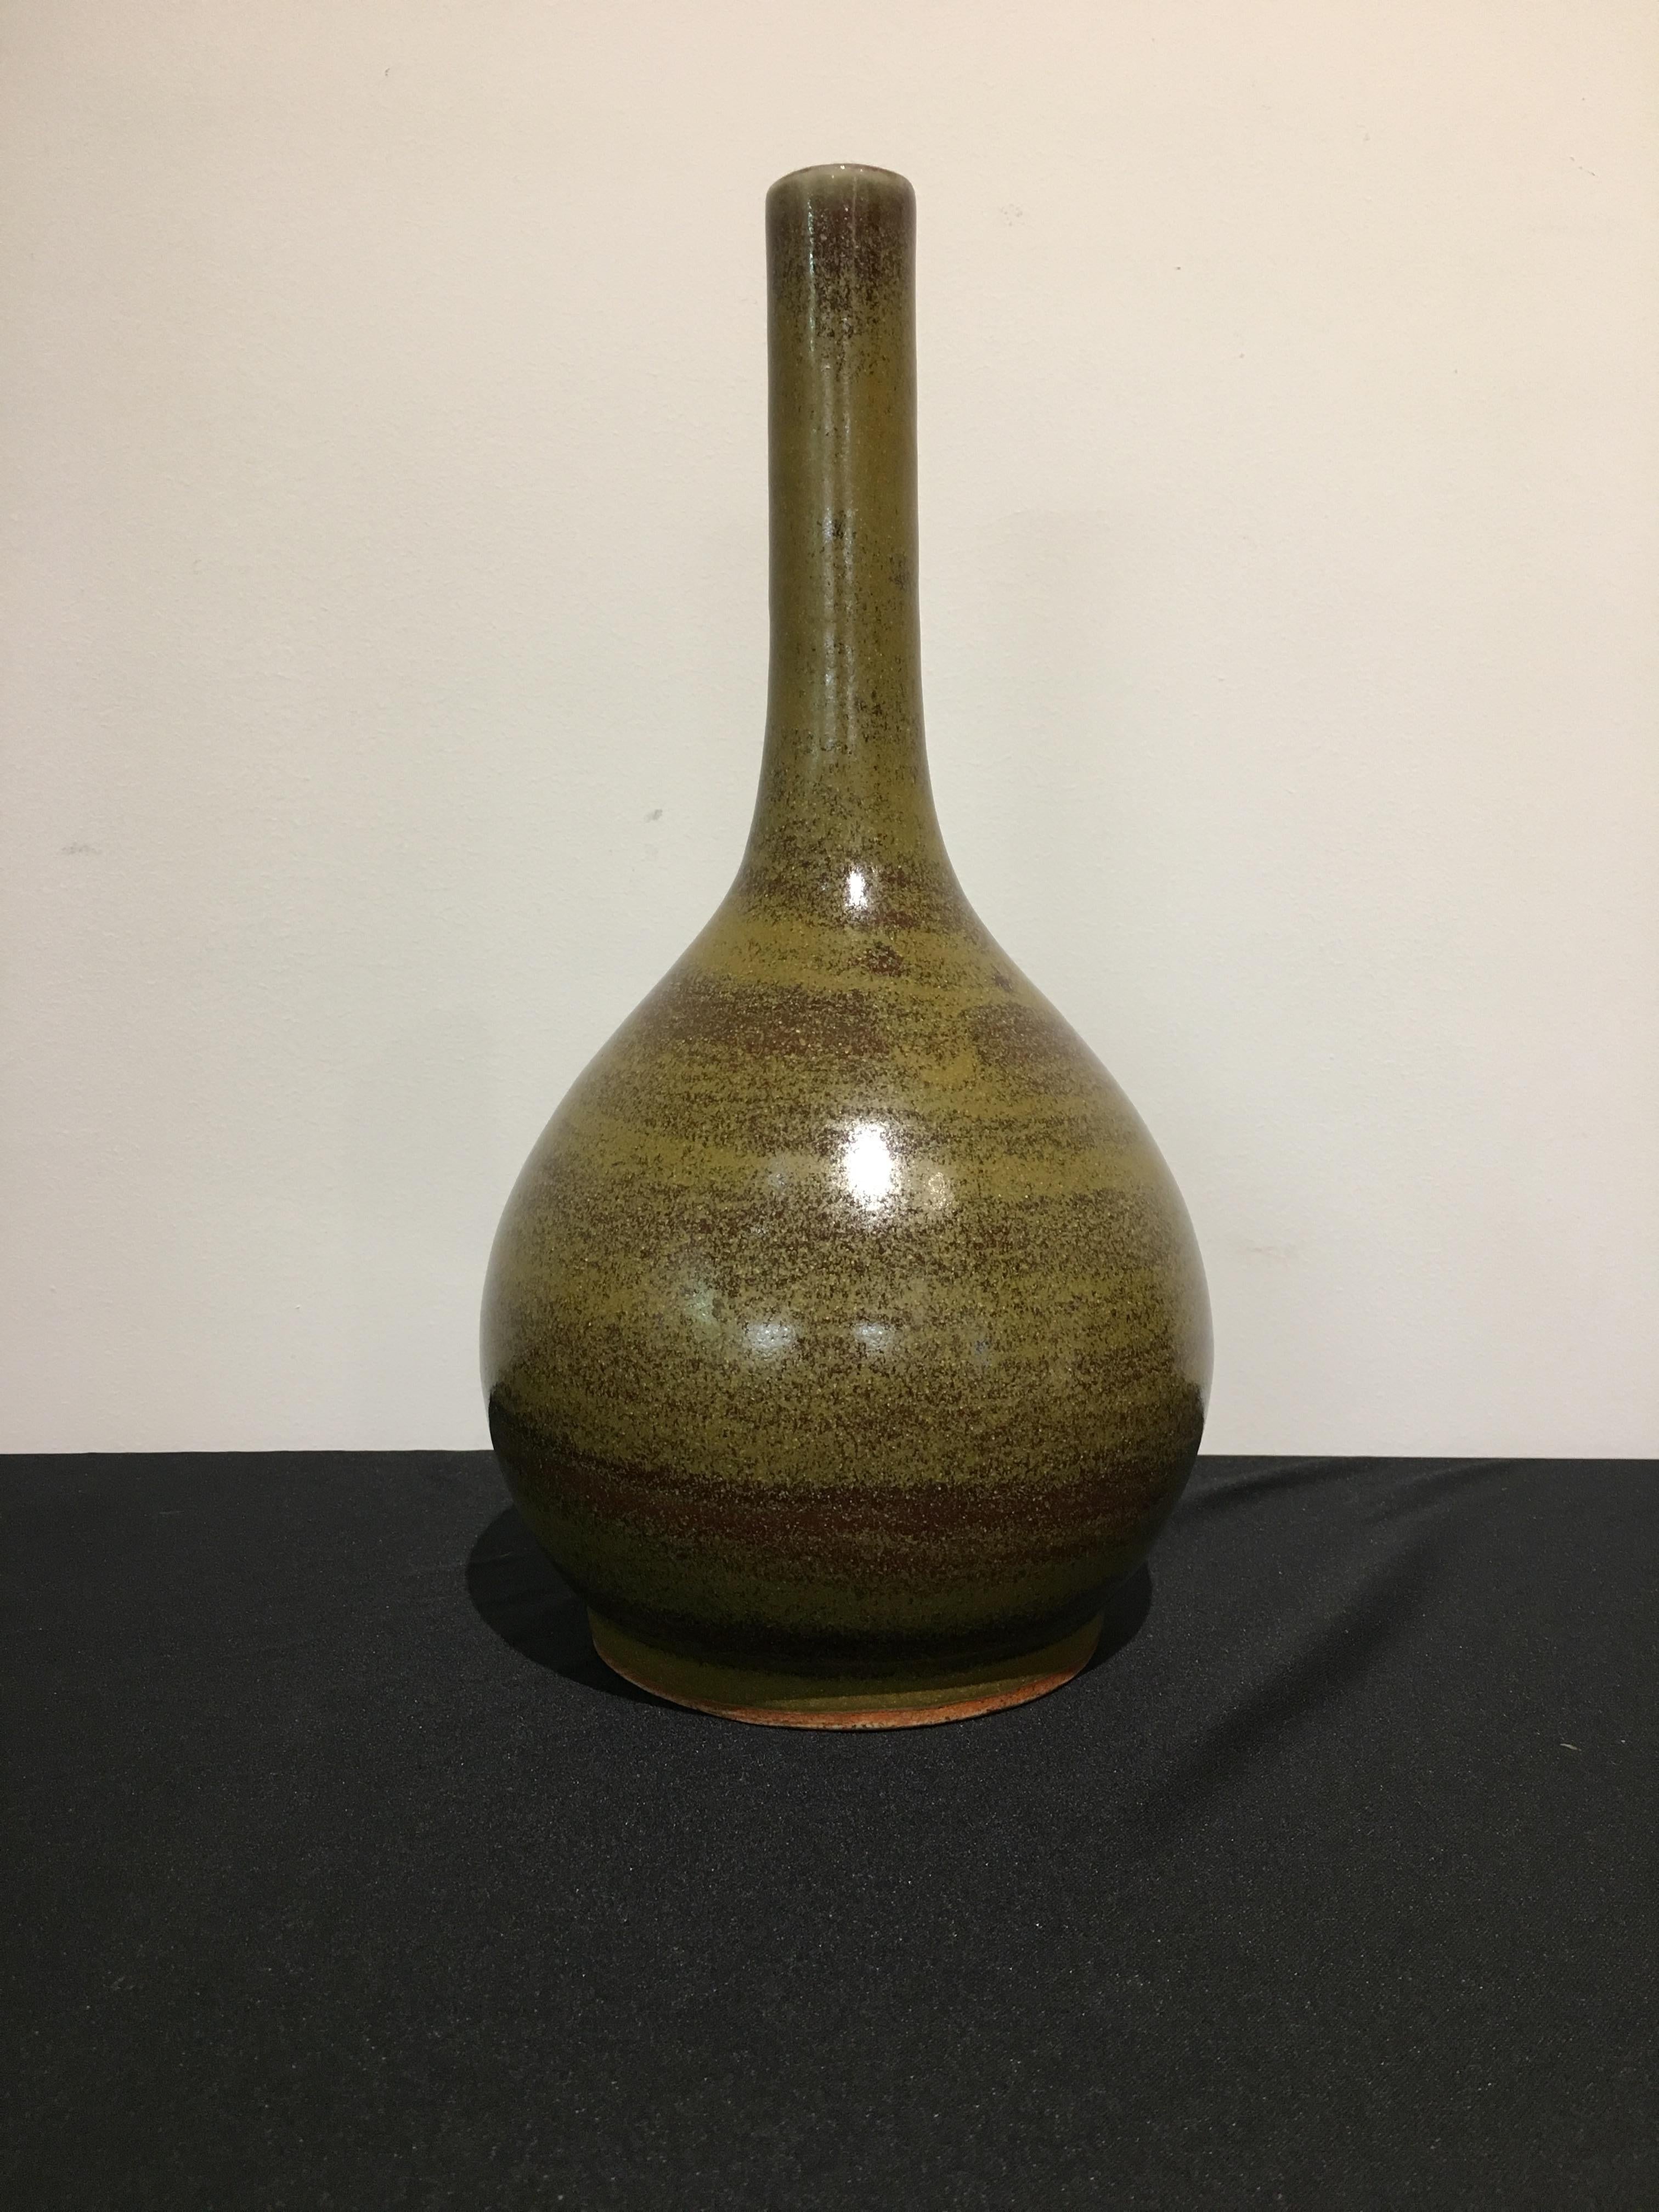 Erhabene und sinnliche chinesische Porzellan-Stielhalsvase mit seltener Aalhautglasur, Qing-Dynastie, 18. Jahrhundert, China. 

Die Vase ist stark getöpfert, mit einem kurzen, vertieften Fuß, der einen runden Körper und einen langen, stabförmigen